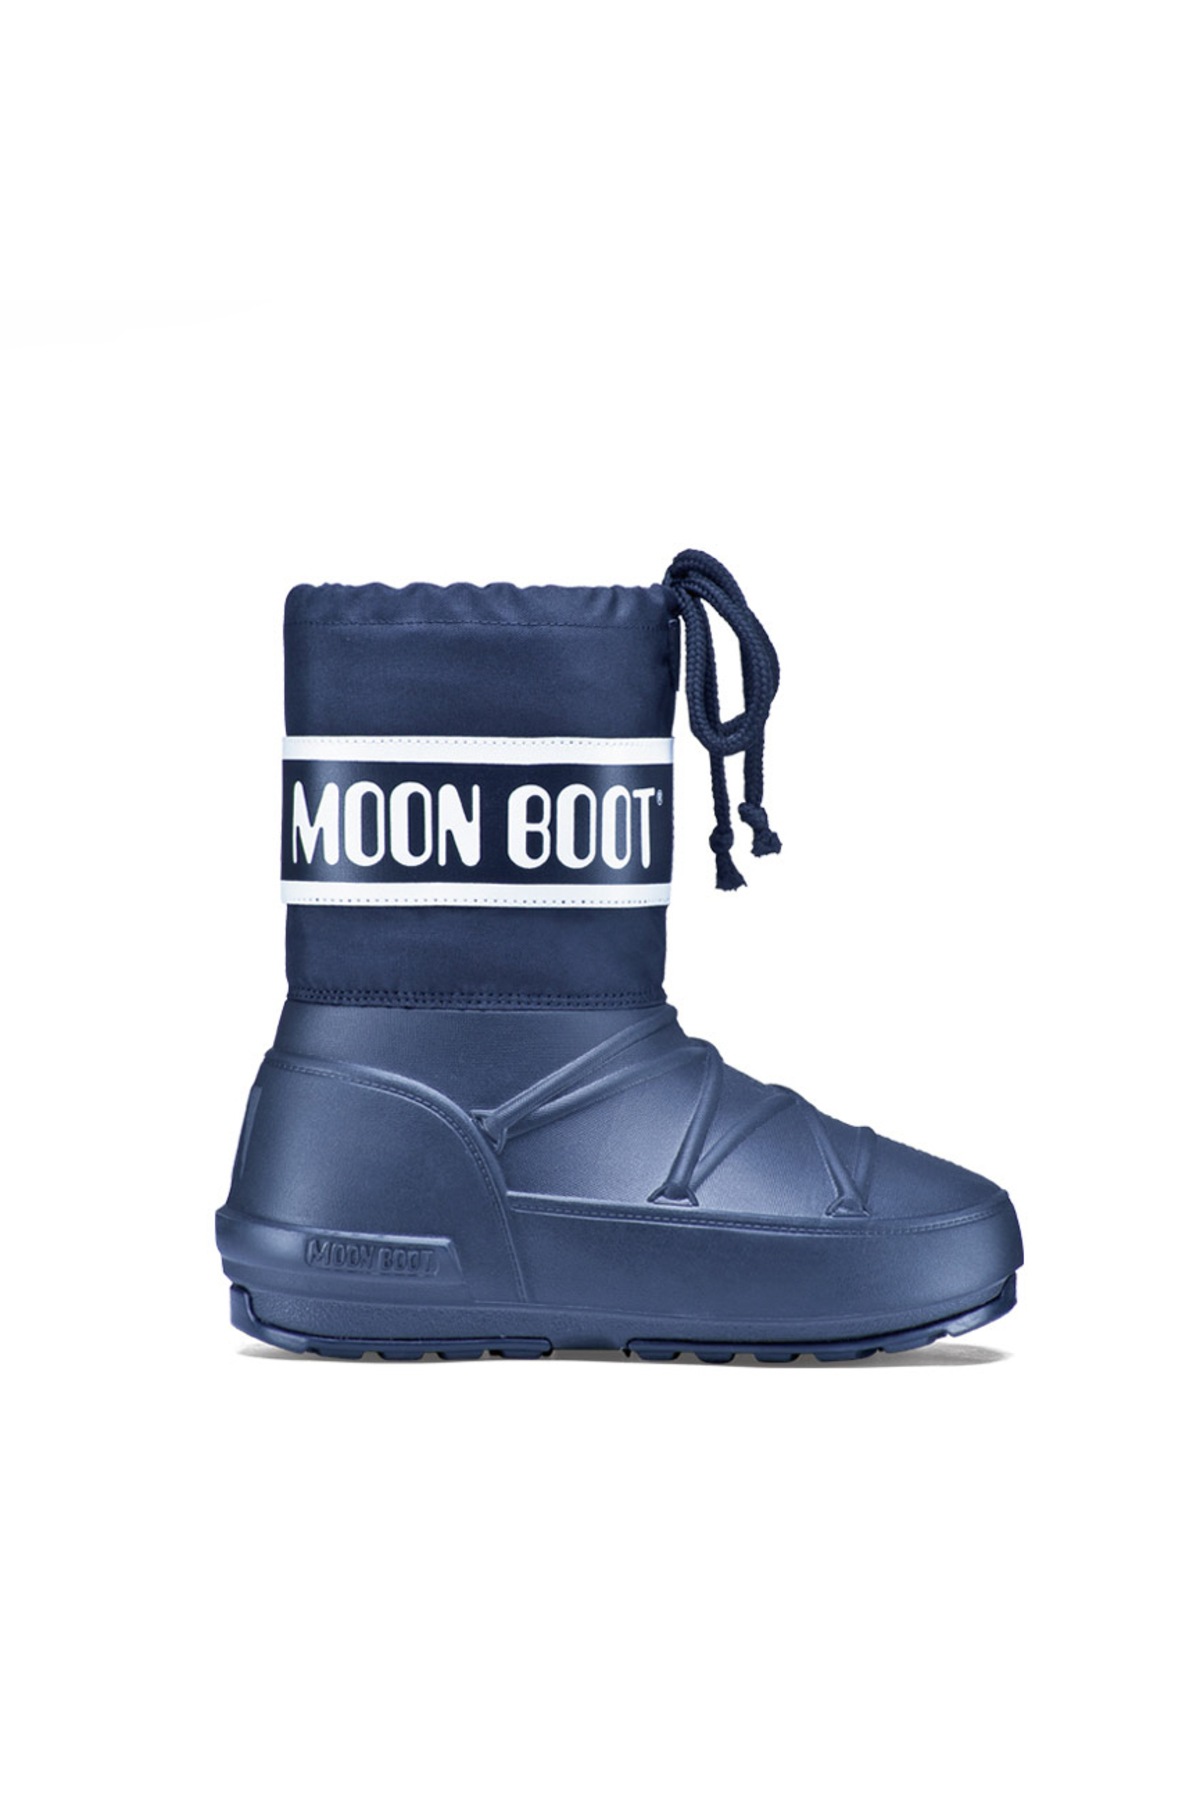 Farklı Beden Seçenekleriyle Moon Boot Modelleri